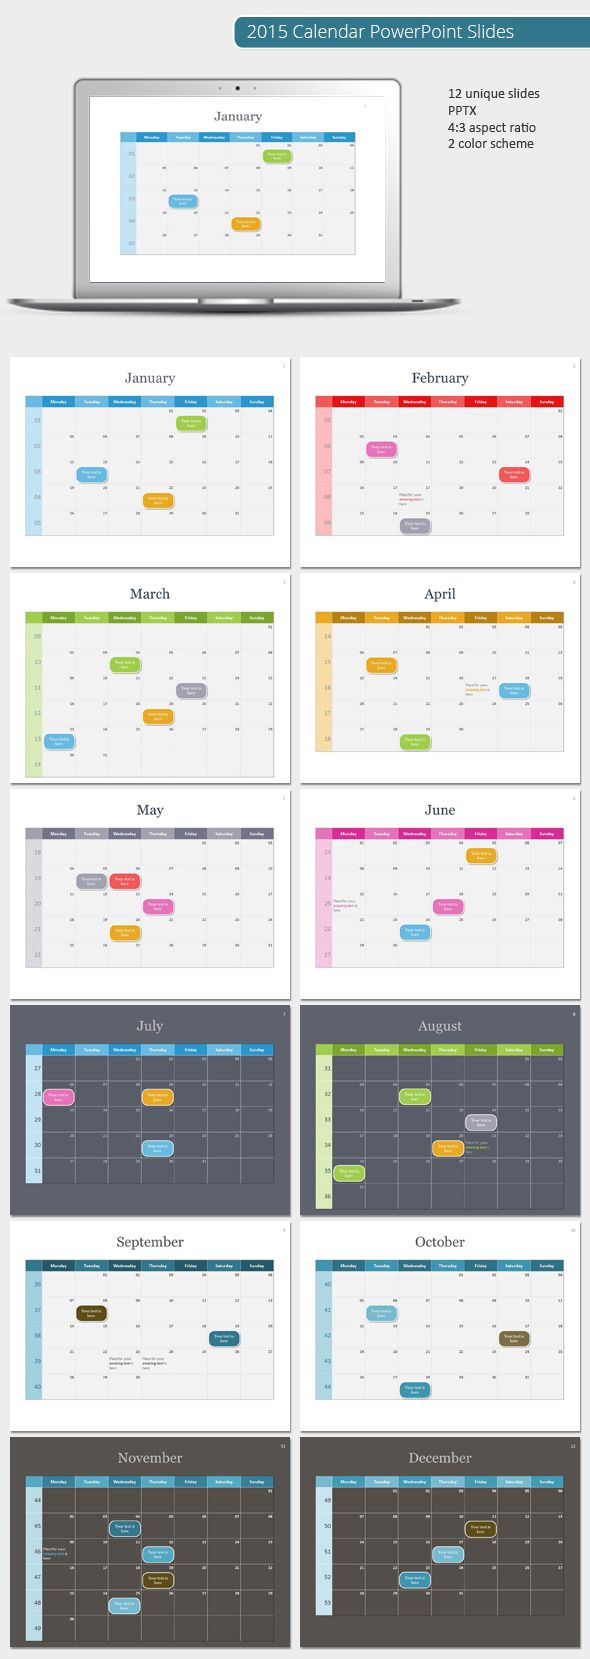 2015 Calendar Powerpoint Template (Powerpoint Templates In Powerpoint Calendar Template 2015